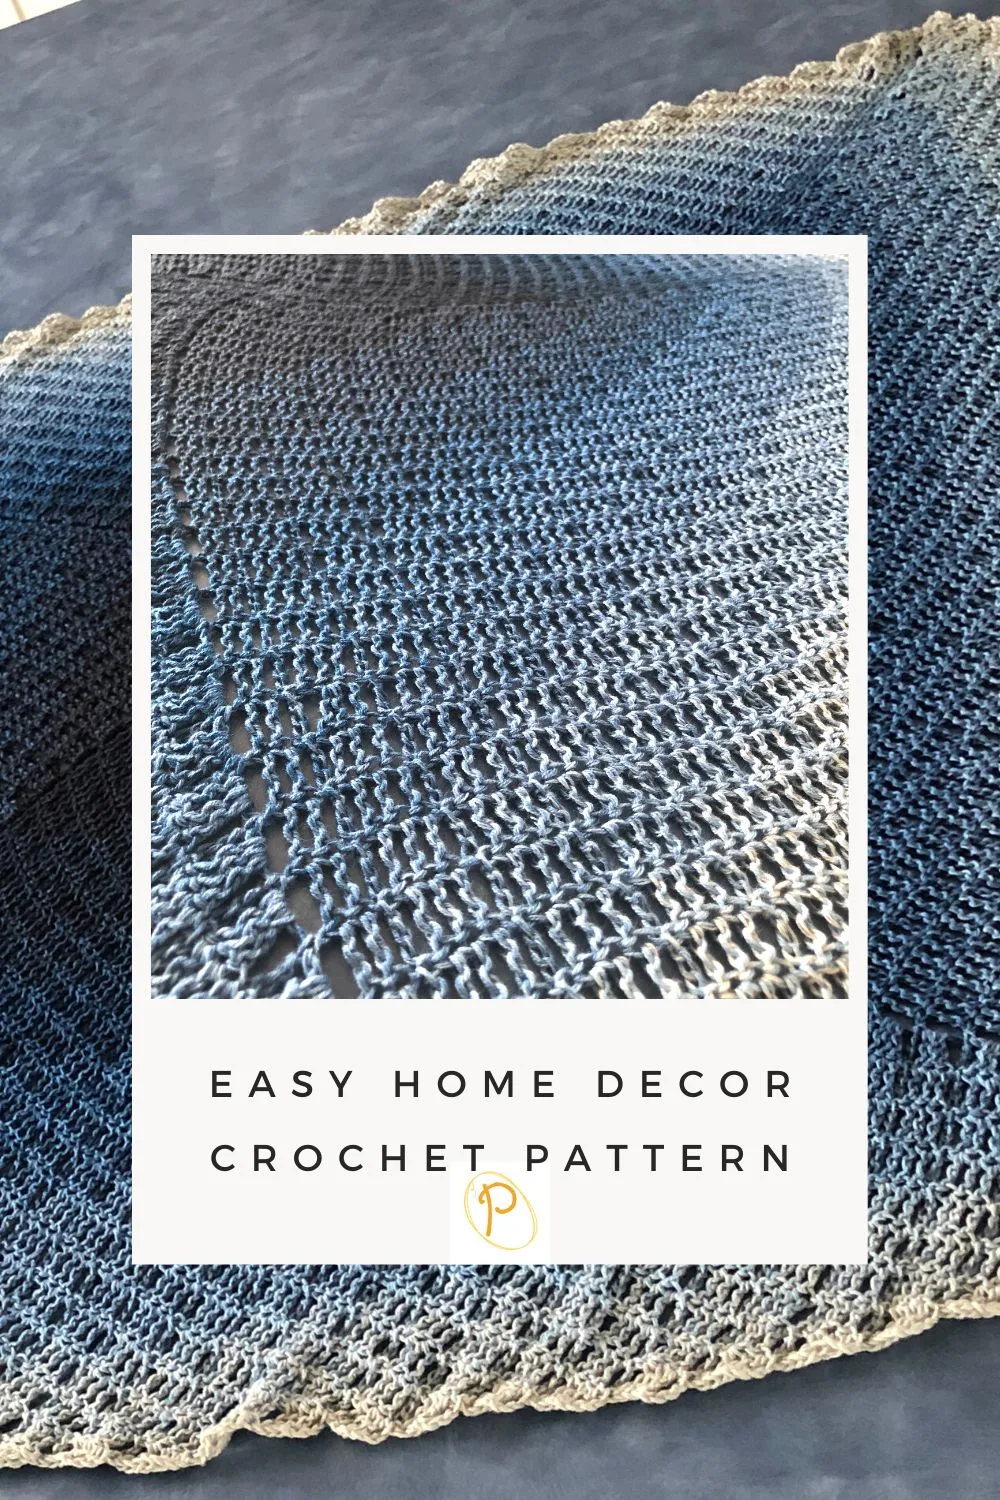 Easy home decor crochet pattern